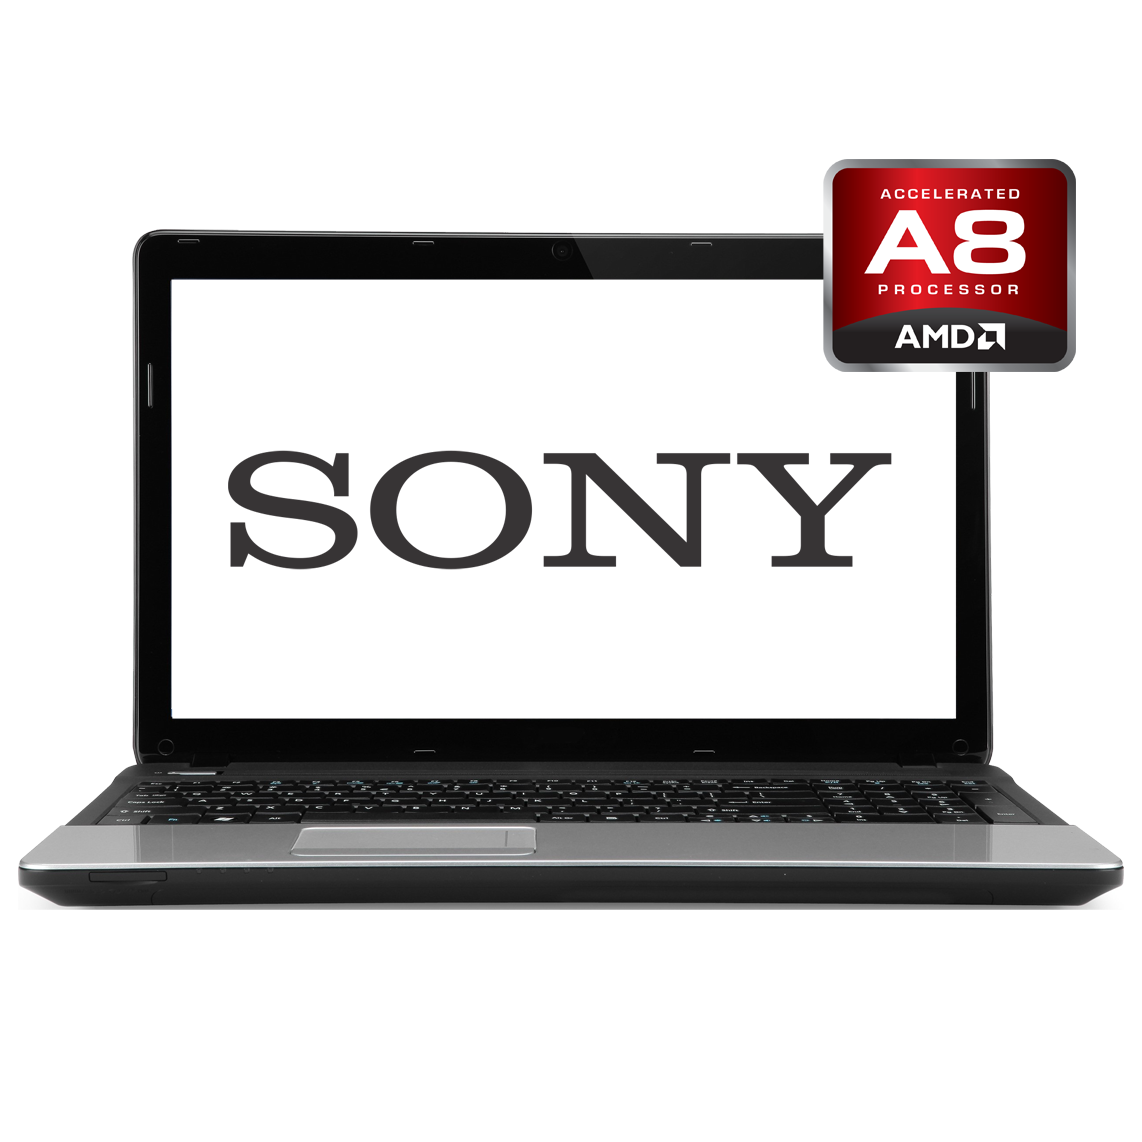 Sony - 15.6 inch AMD A8